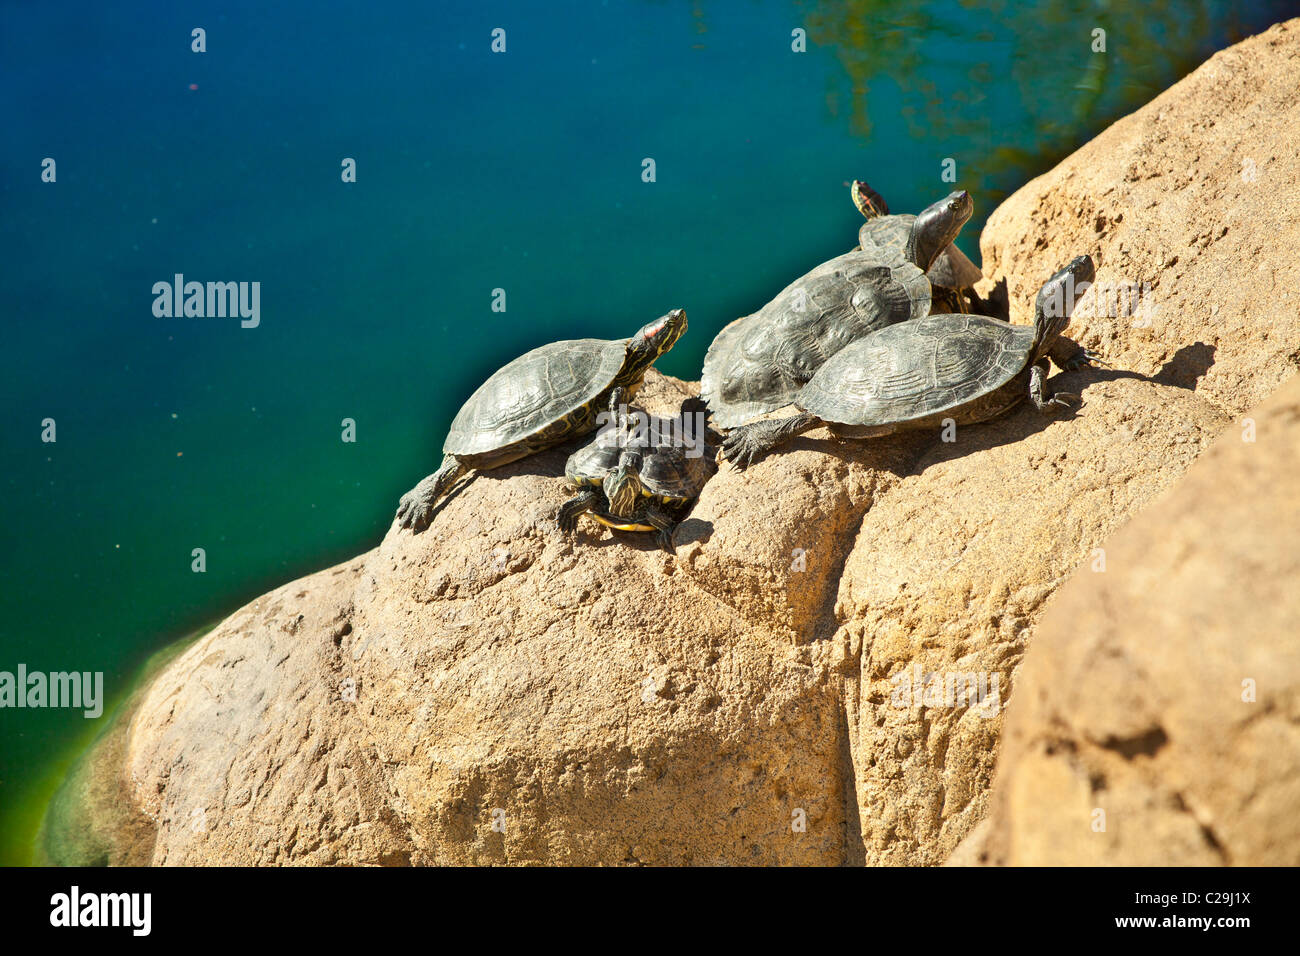 Jumbo red ear slider turtles basking in sun on rocks near lake. © Myrleen Pearson Stock Photo